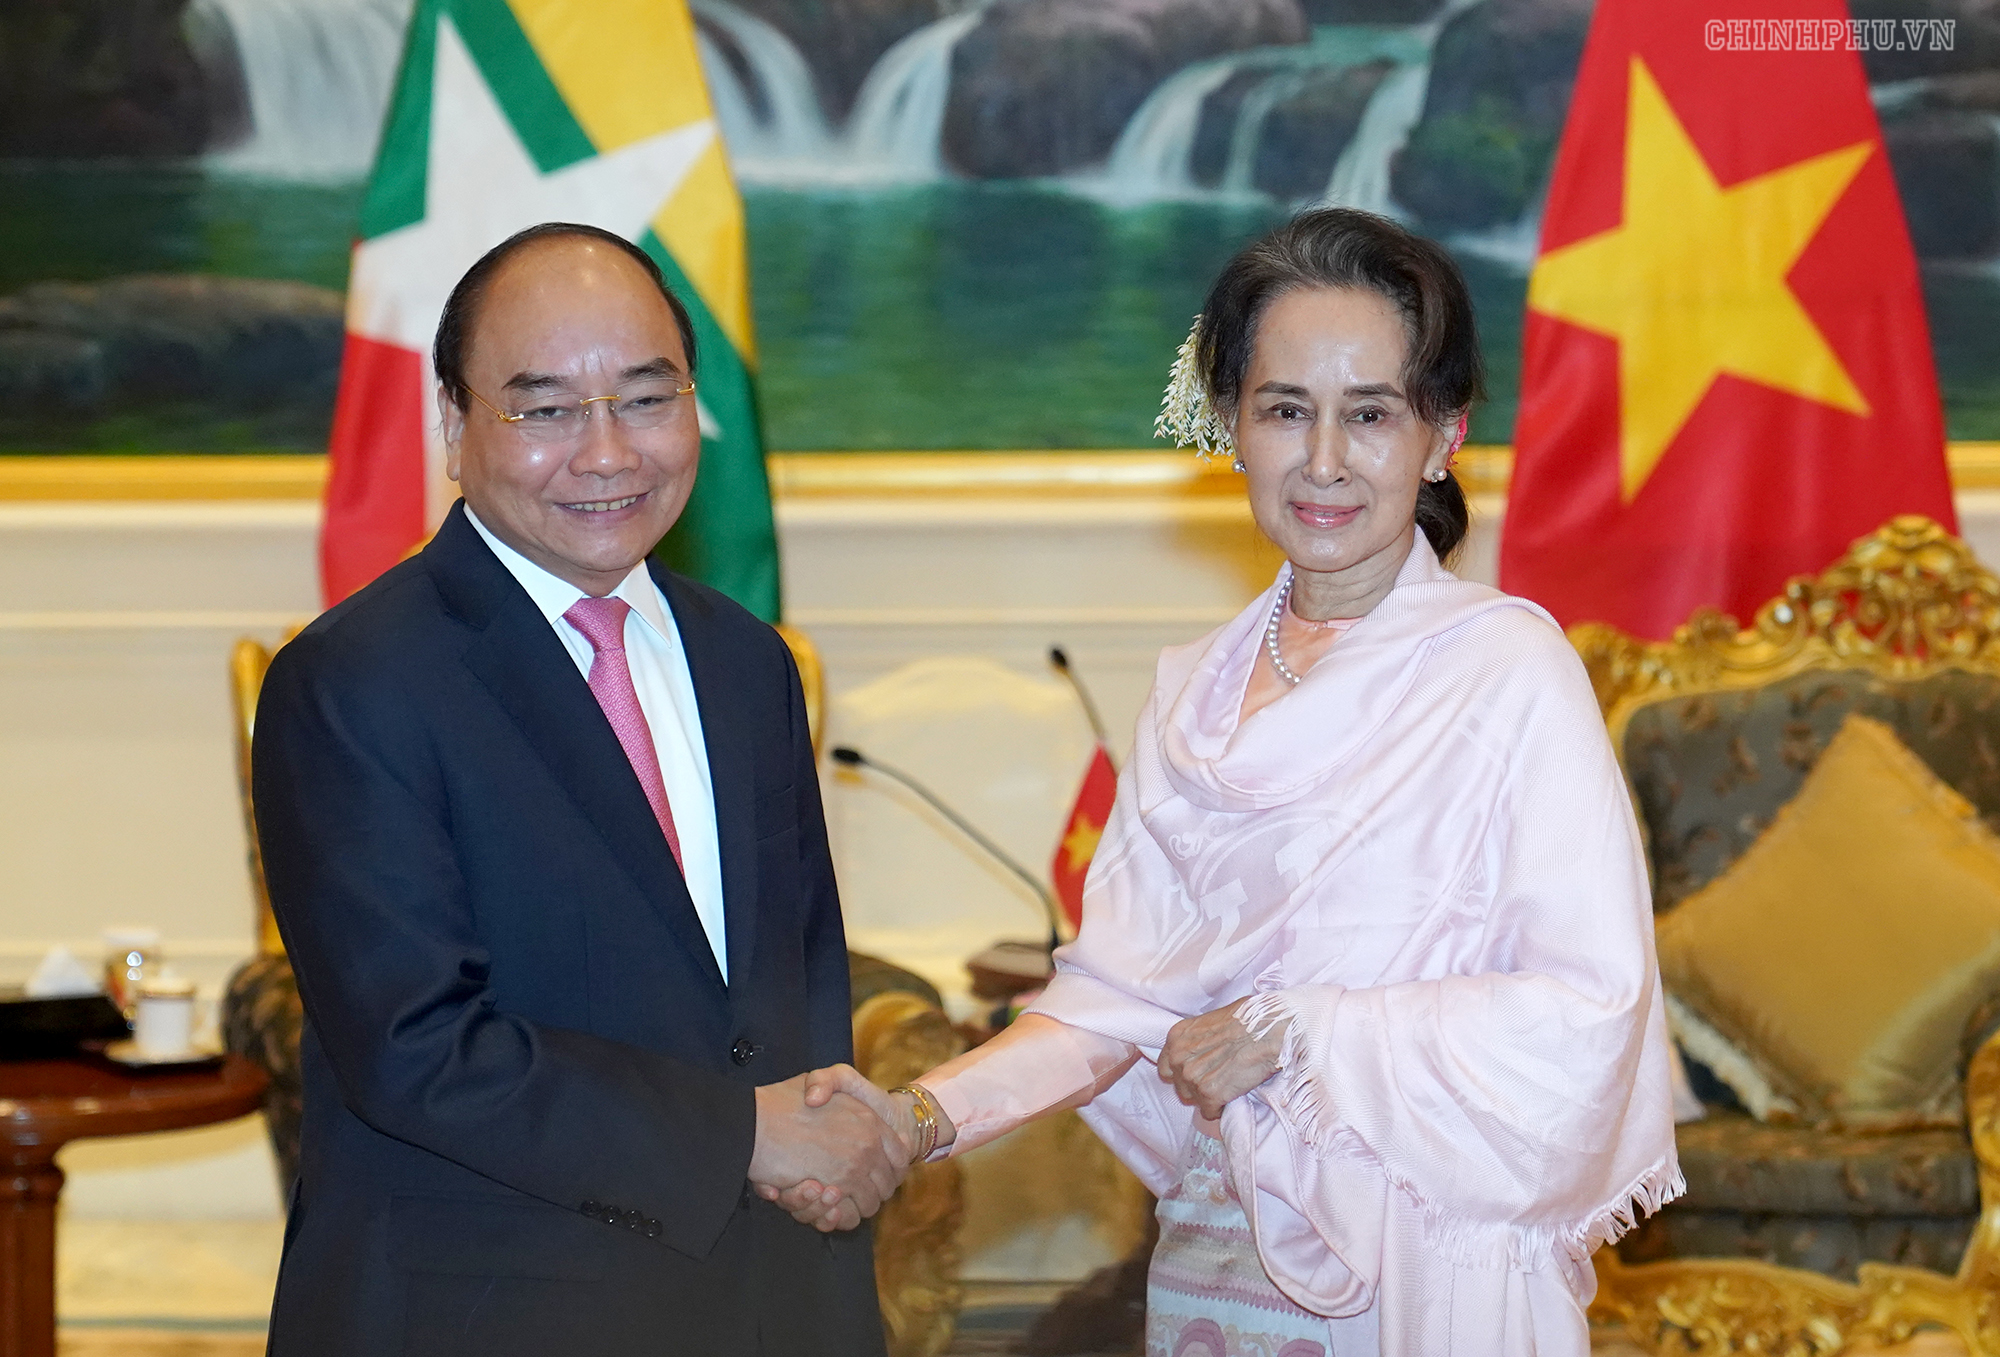 Thủ tướng hoan nghênh đề xuất thành lập khu công nghiệp Việt Nam tại Myanmar